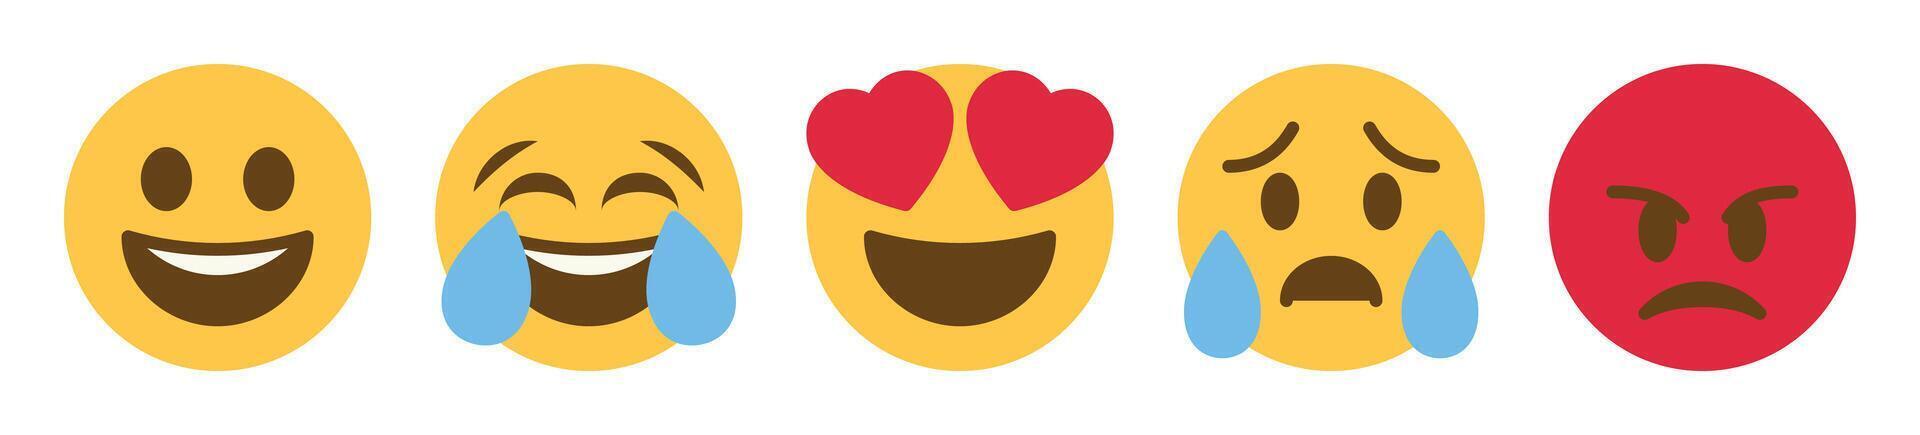 social meios de comunicação reação emojis ícone conjunto - como, amor, haha, uau, triste, Bravo símbolos vetor